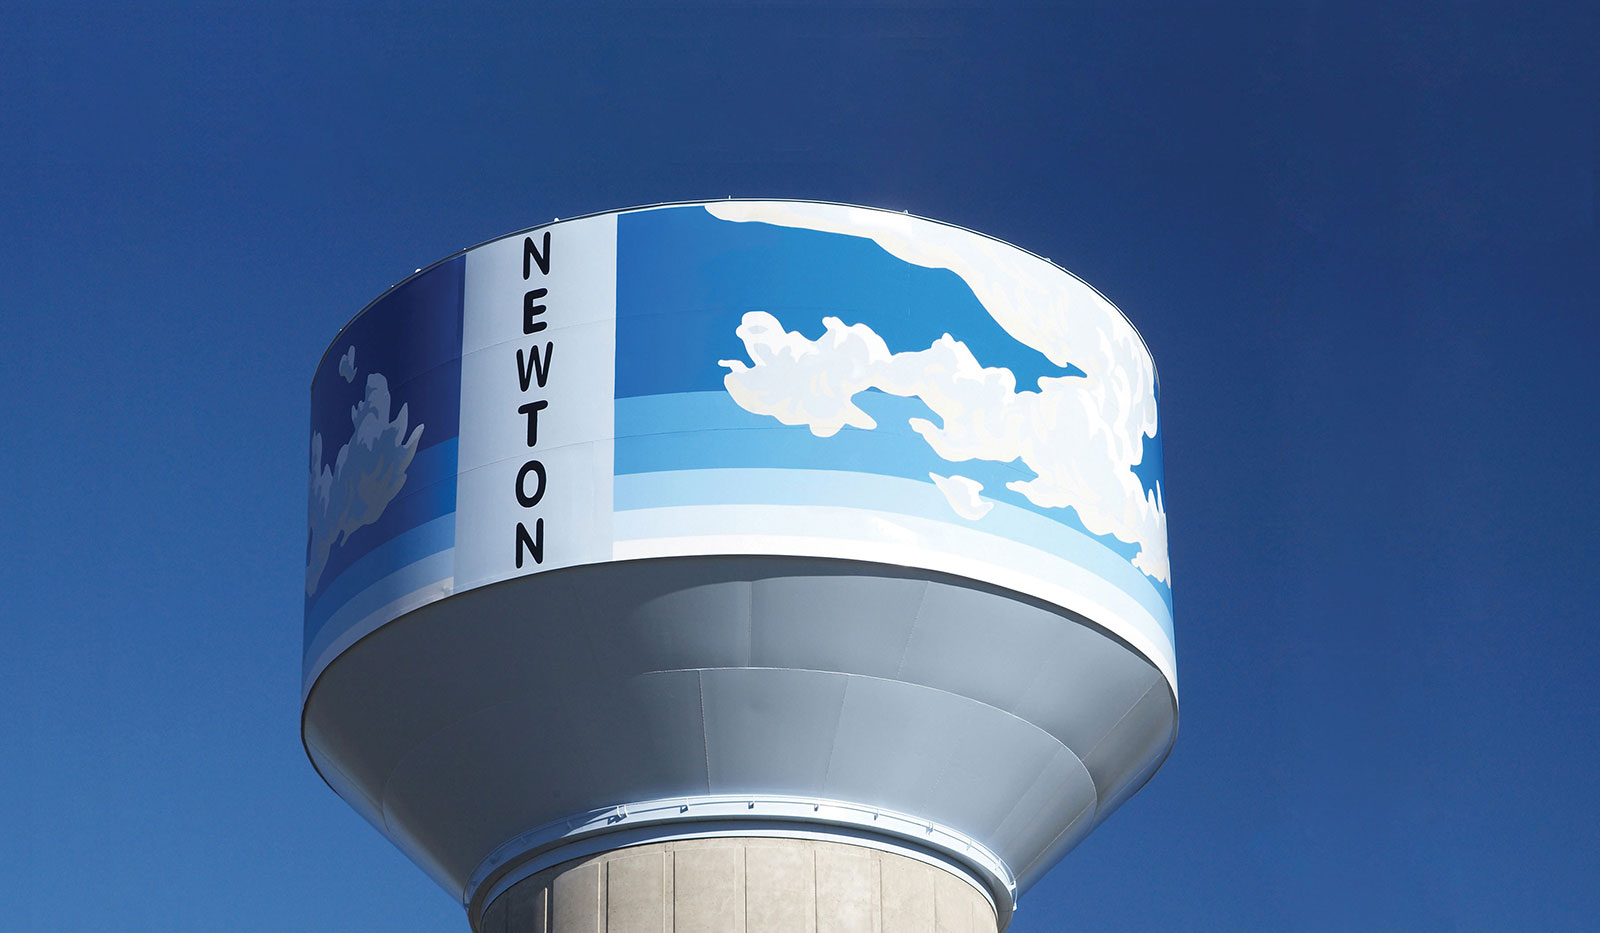 Water tower in Newton, Kansas